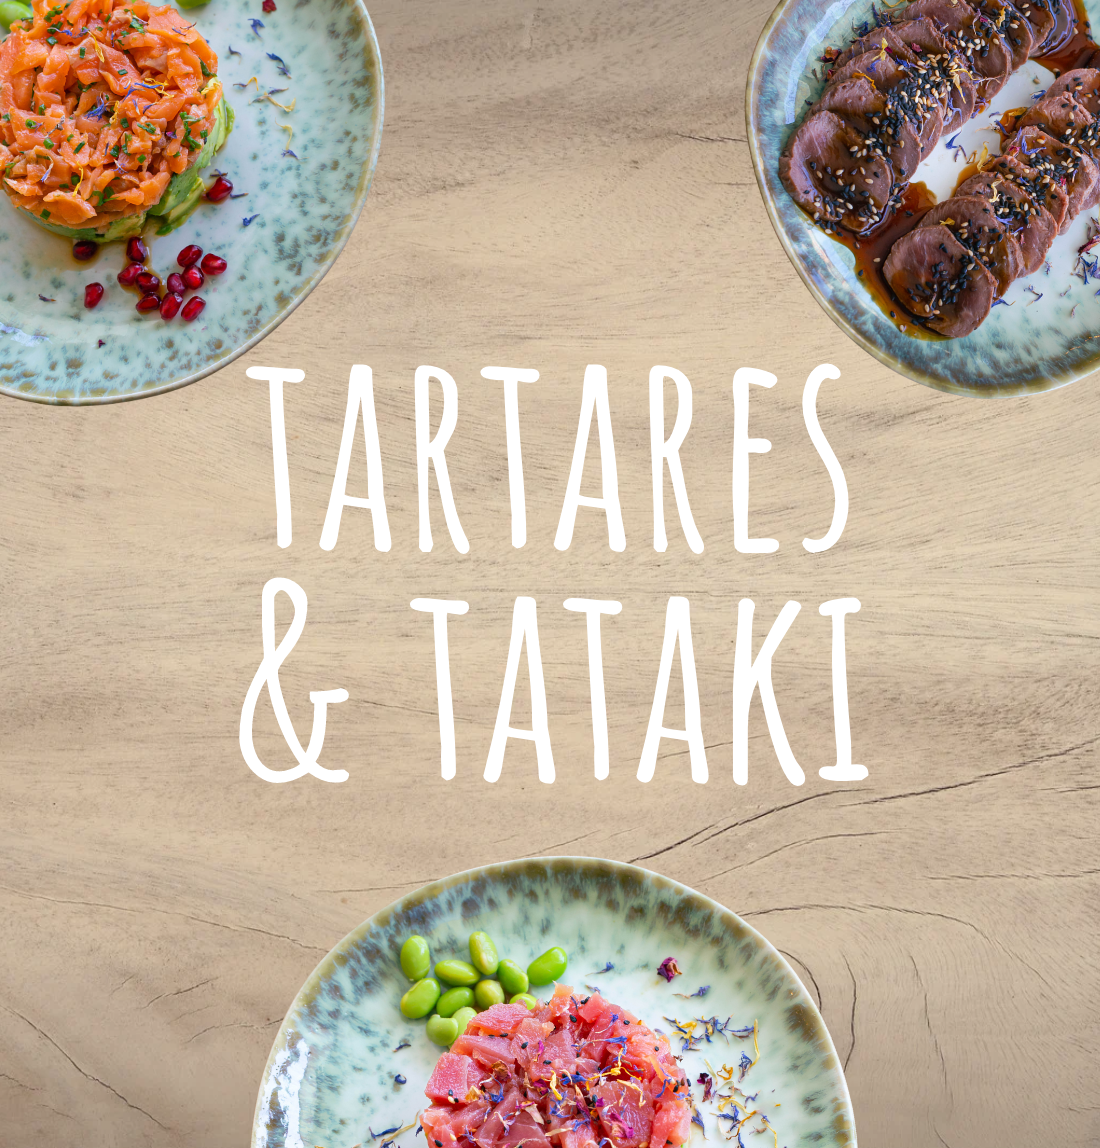 Tartares und tataki